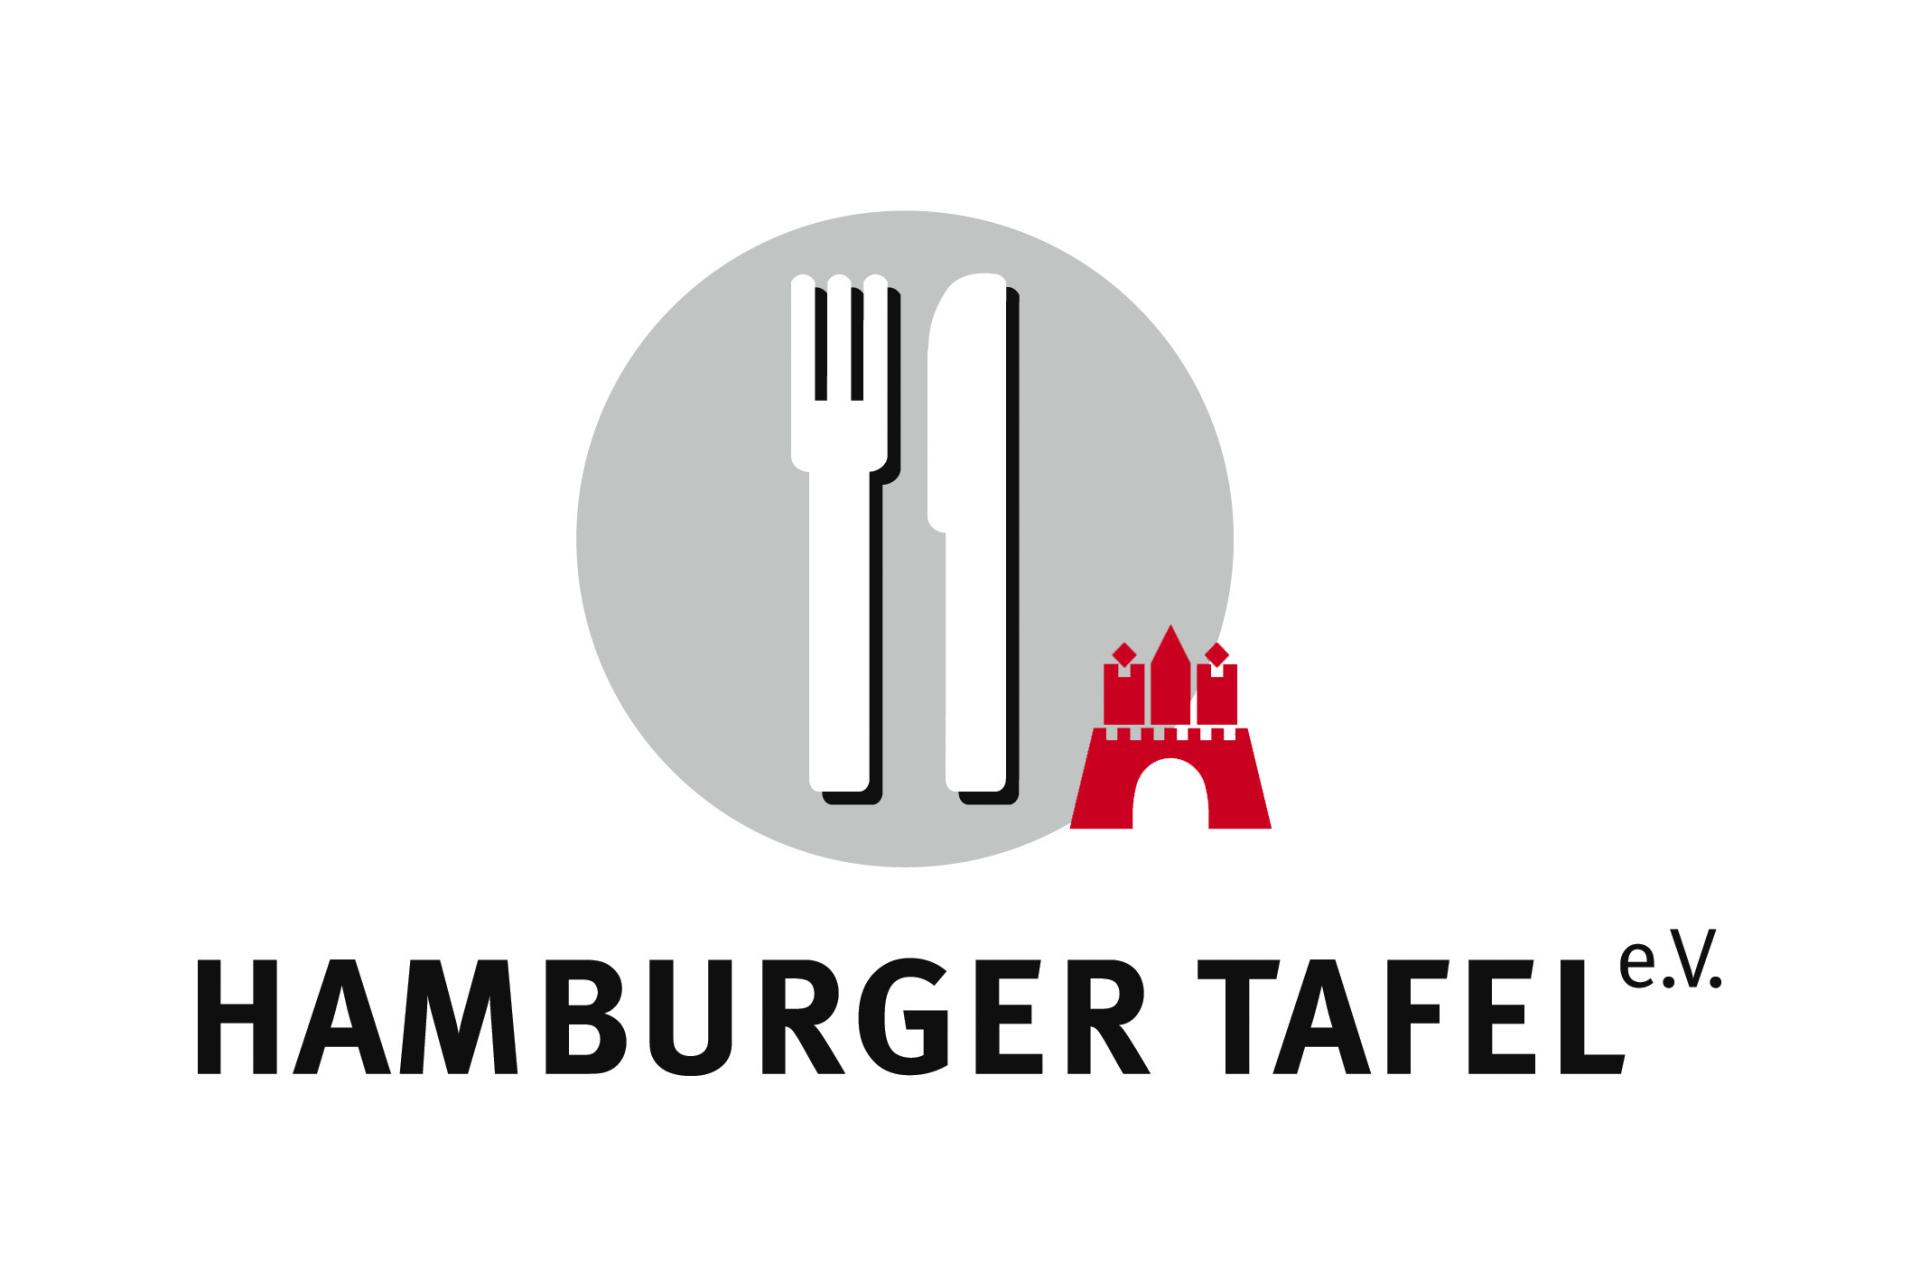 Hamburger Tafel